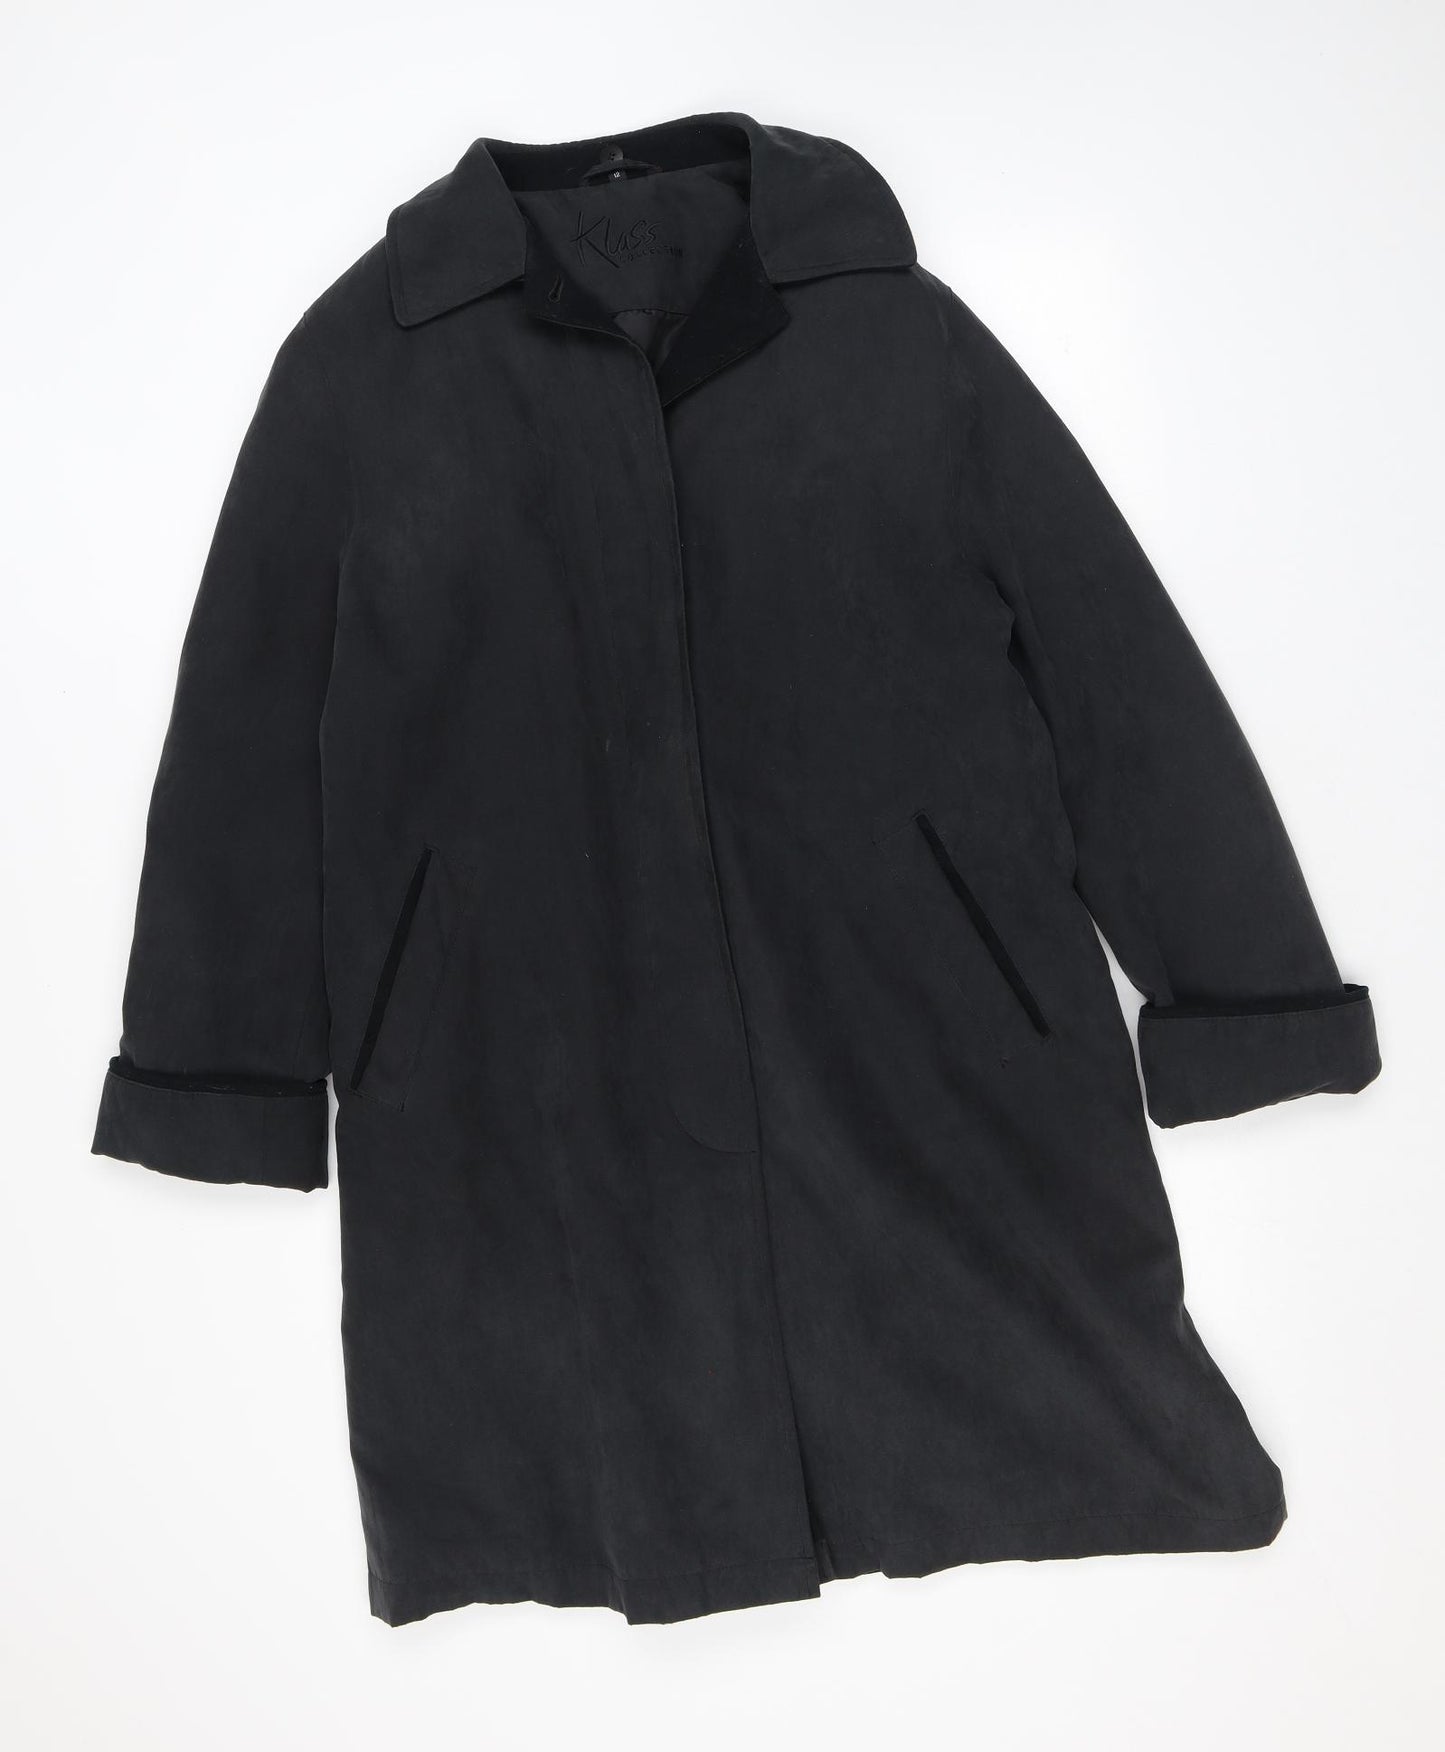 Klass Womens Black Pea Coat Coat Size 12 Button